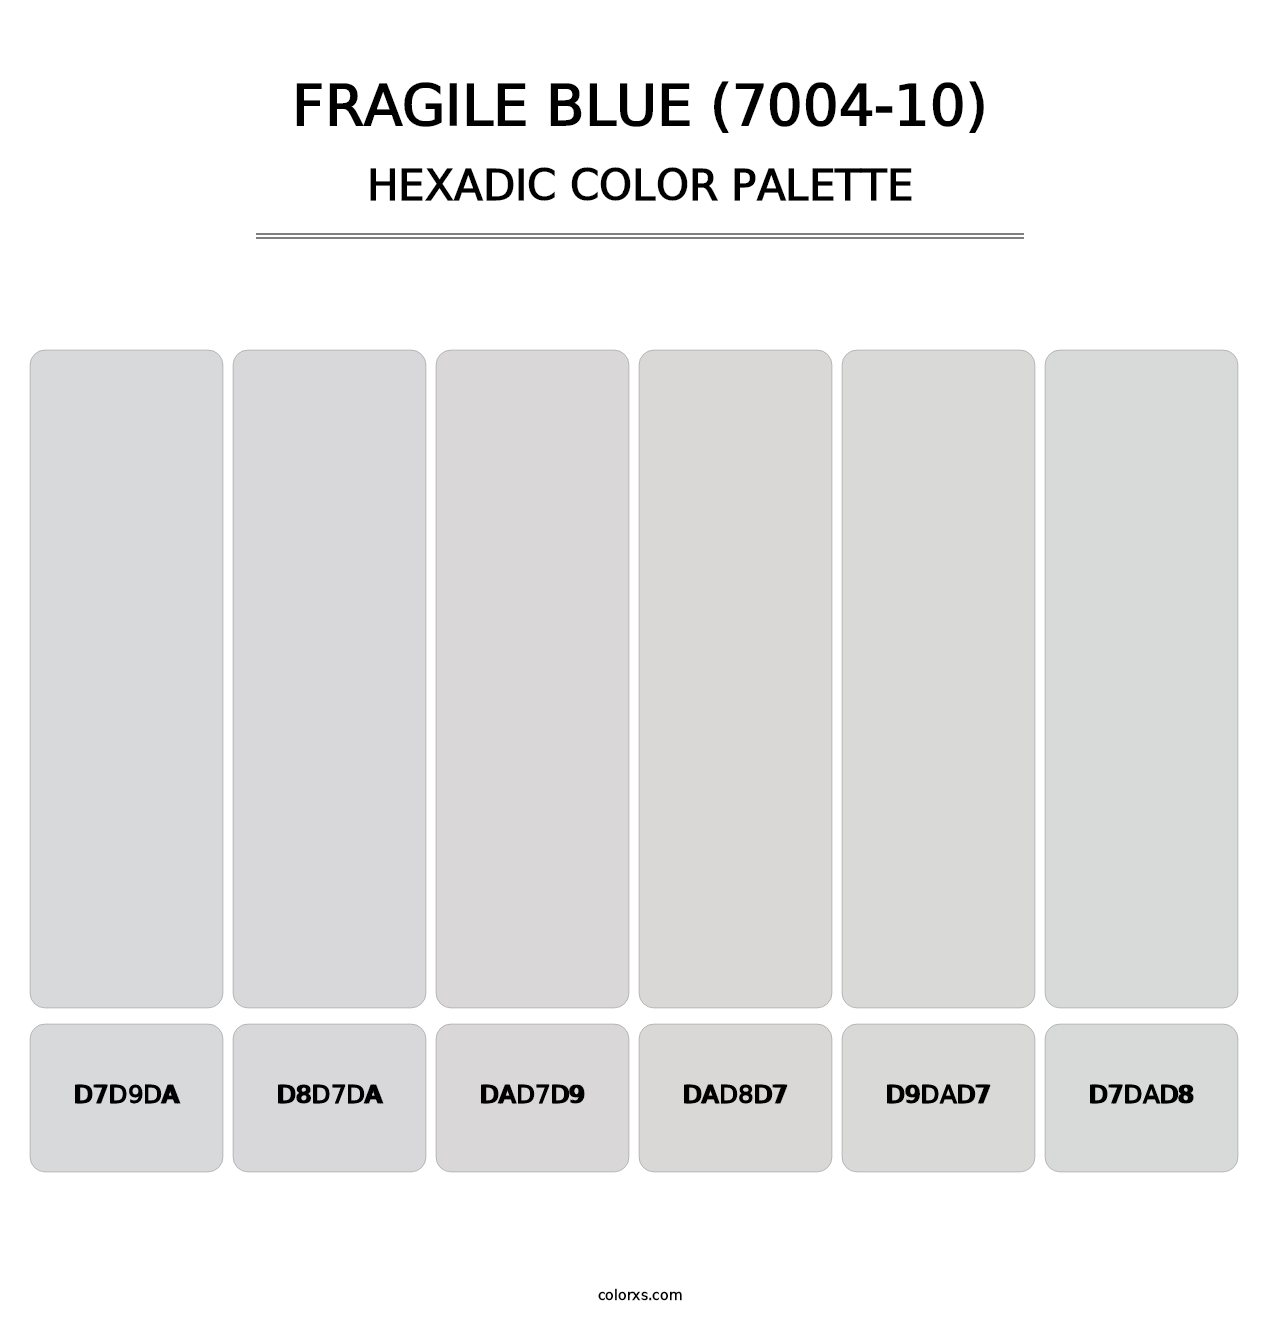 Fragile Blue (7004-10) - Hexadic Color Palette